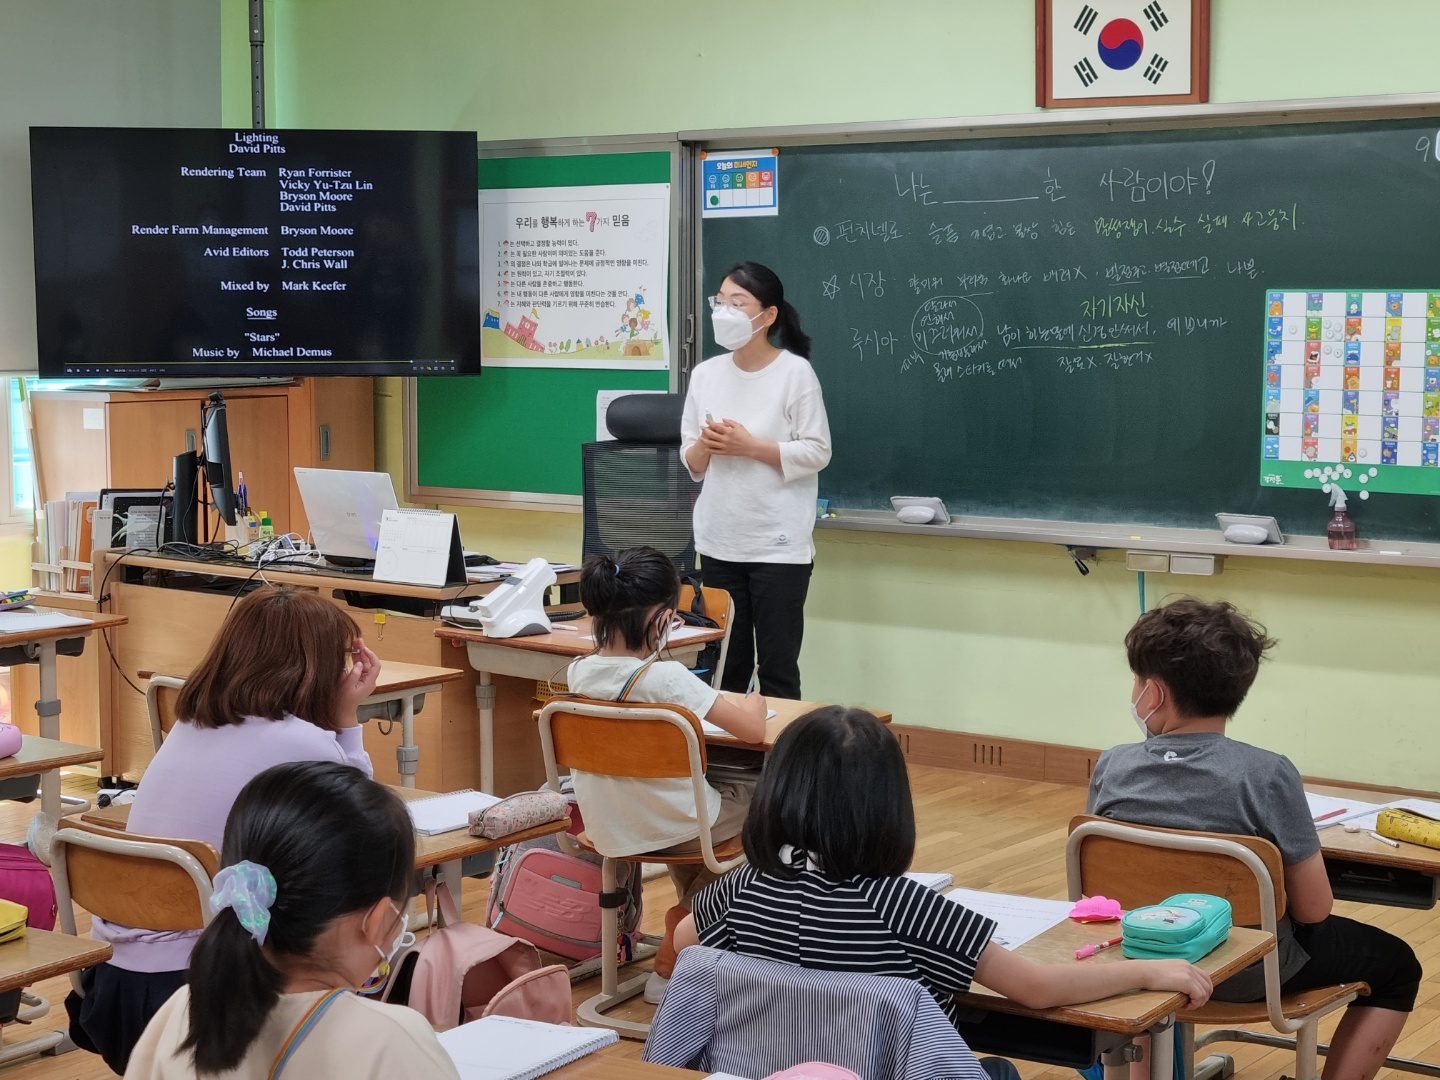 봉주초등학교 2학년 대상 생명존중교육